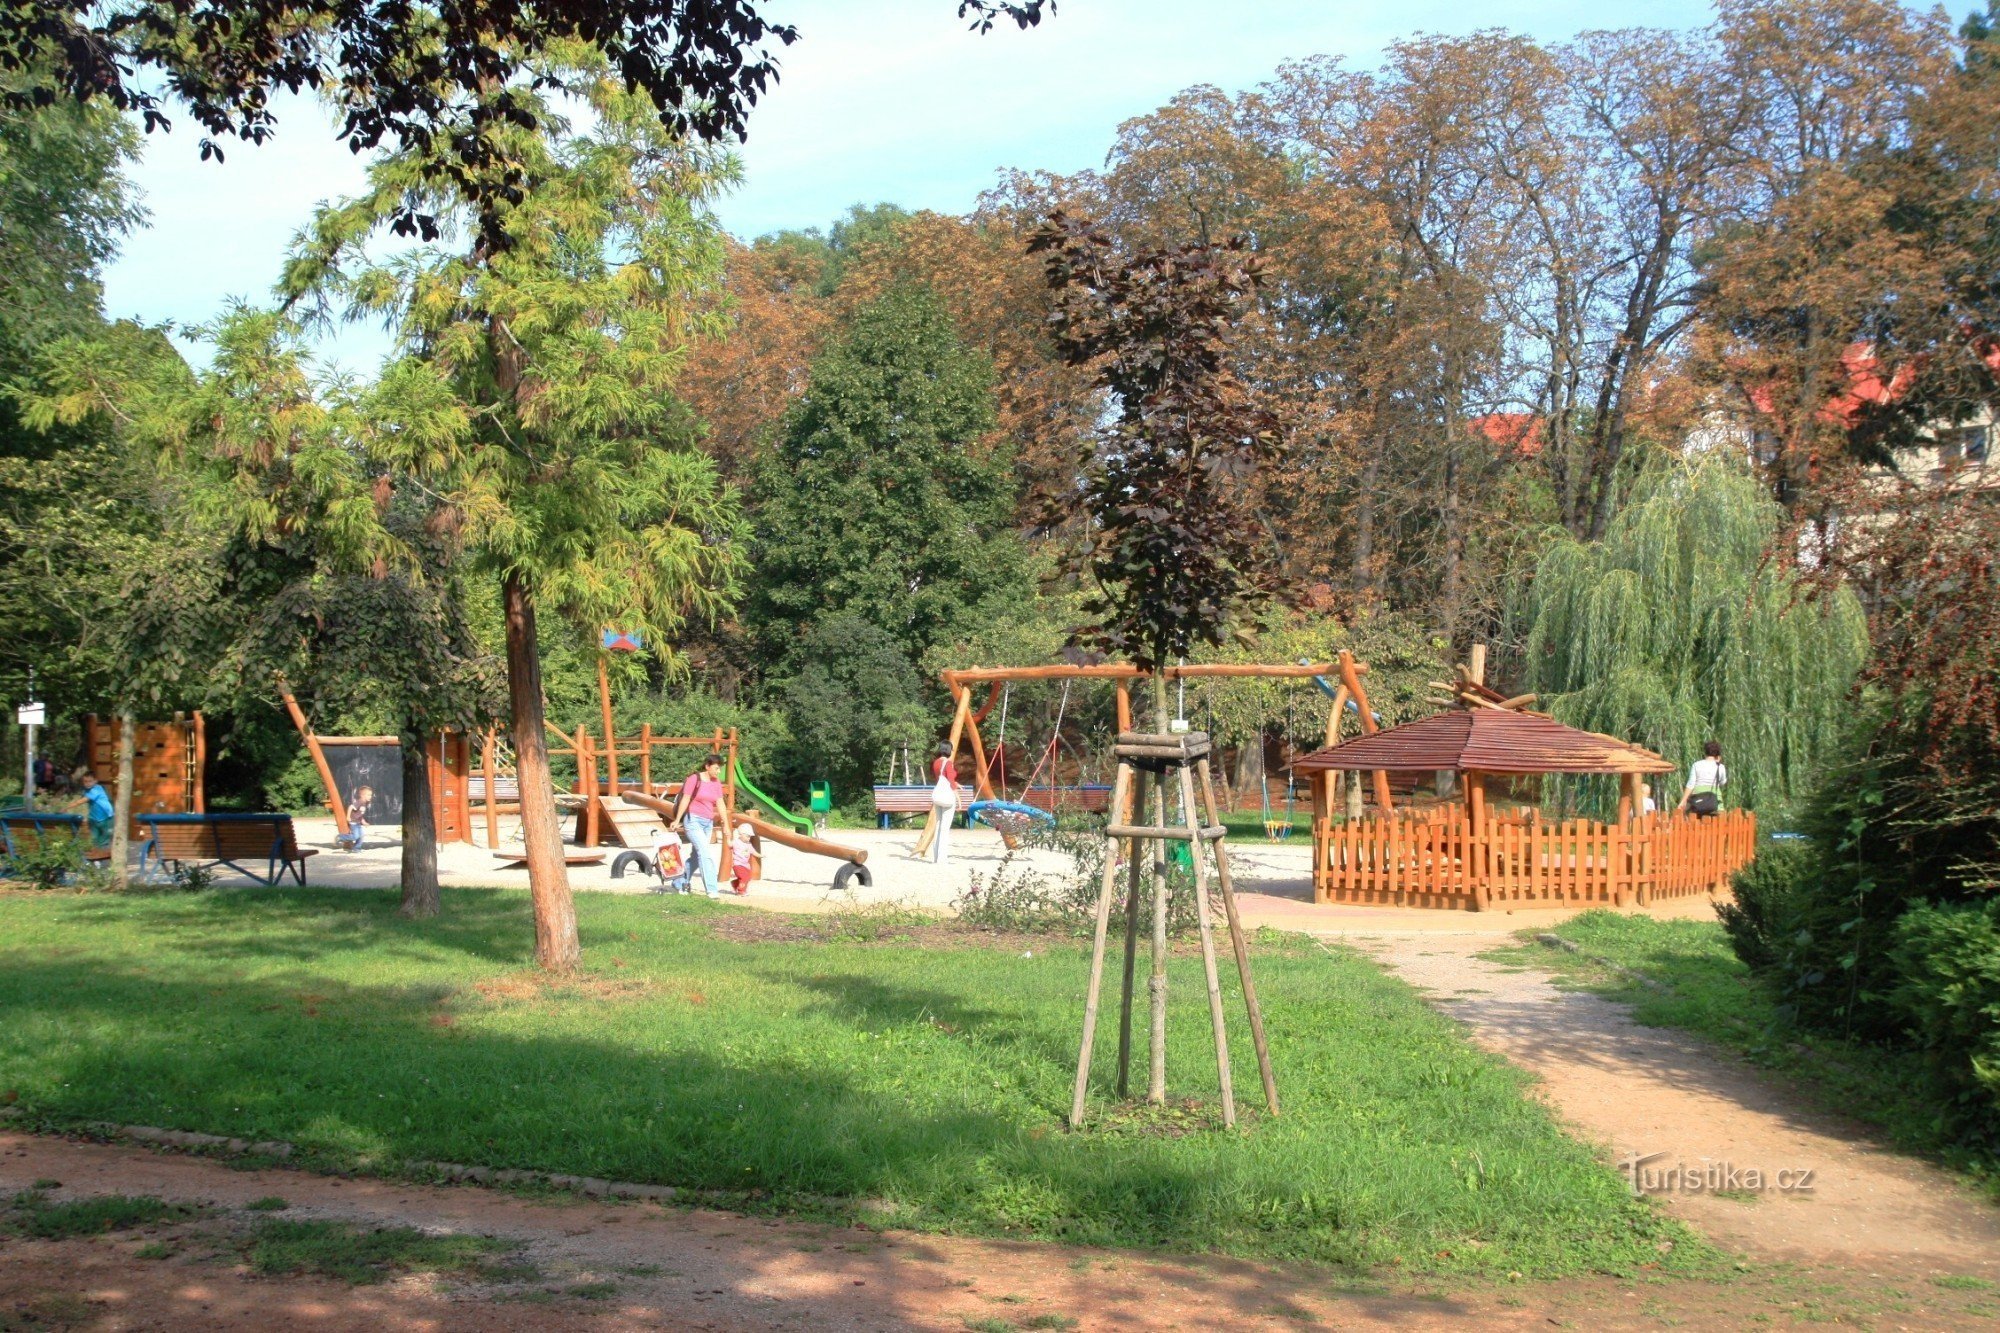 Parque infantil no parque